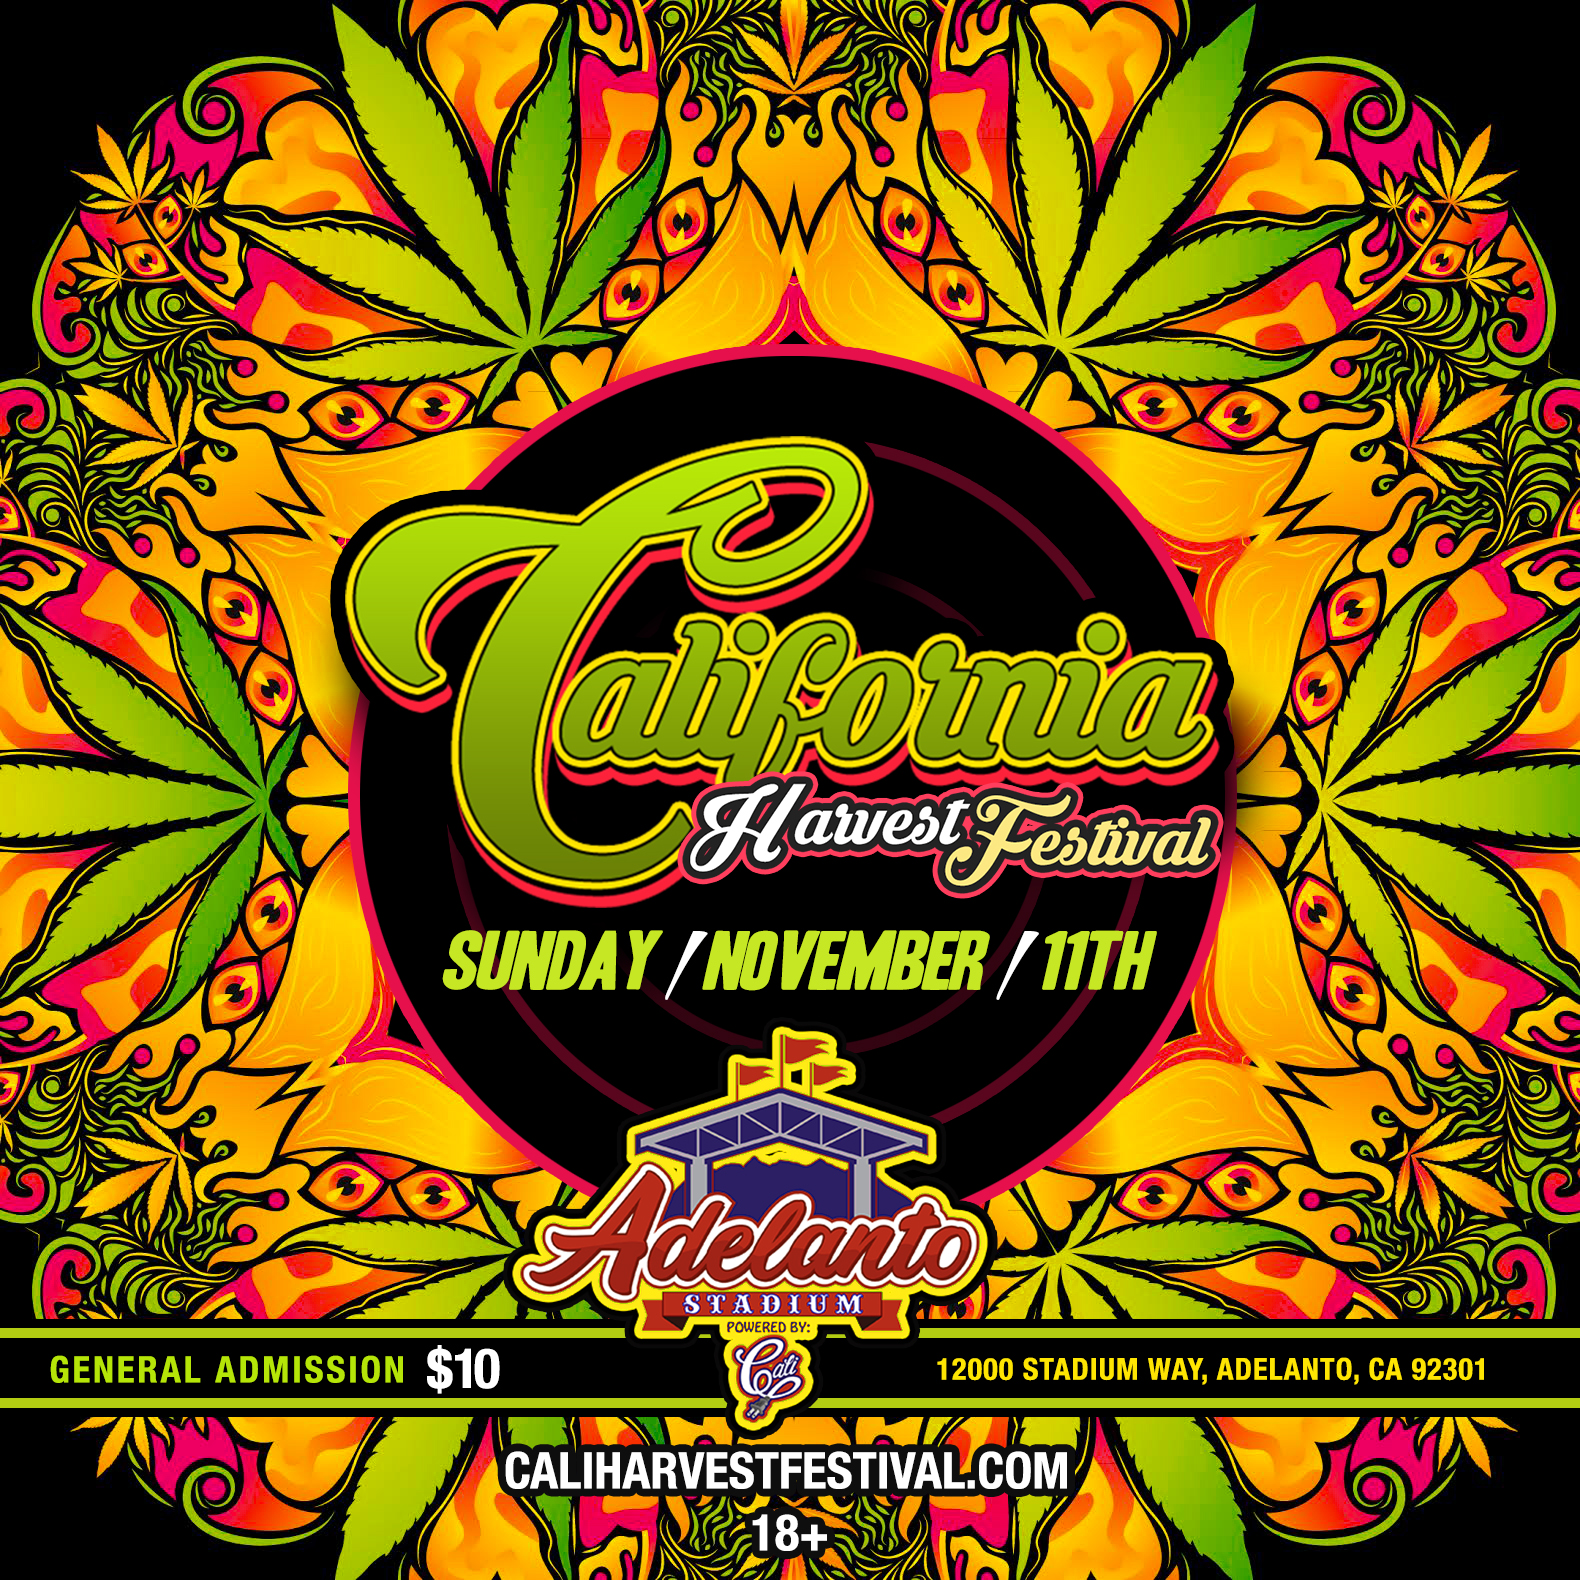 California Harvest Festival Tickets 11/11/18